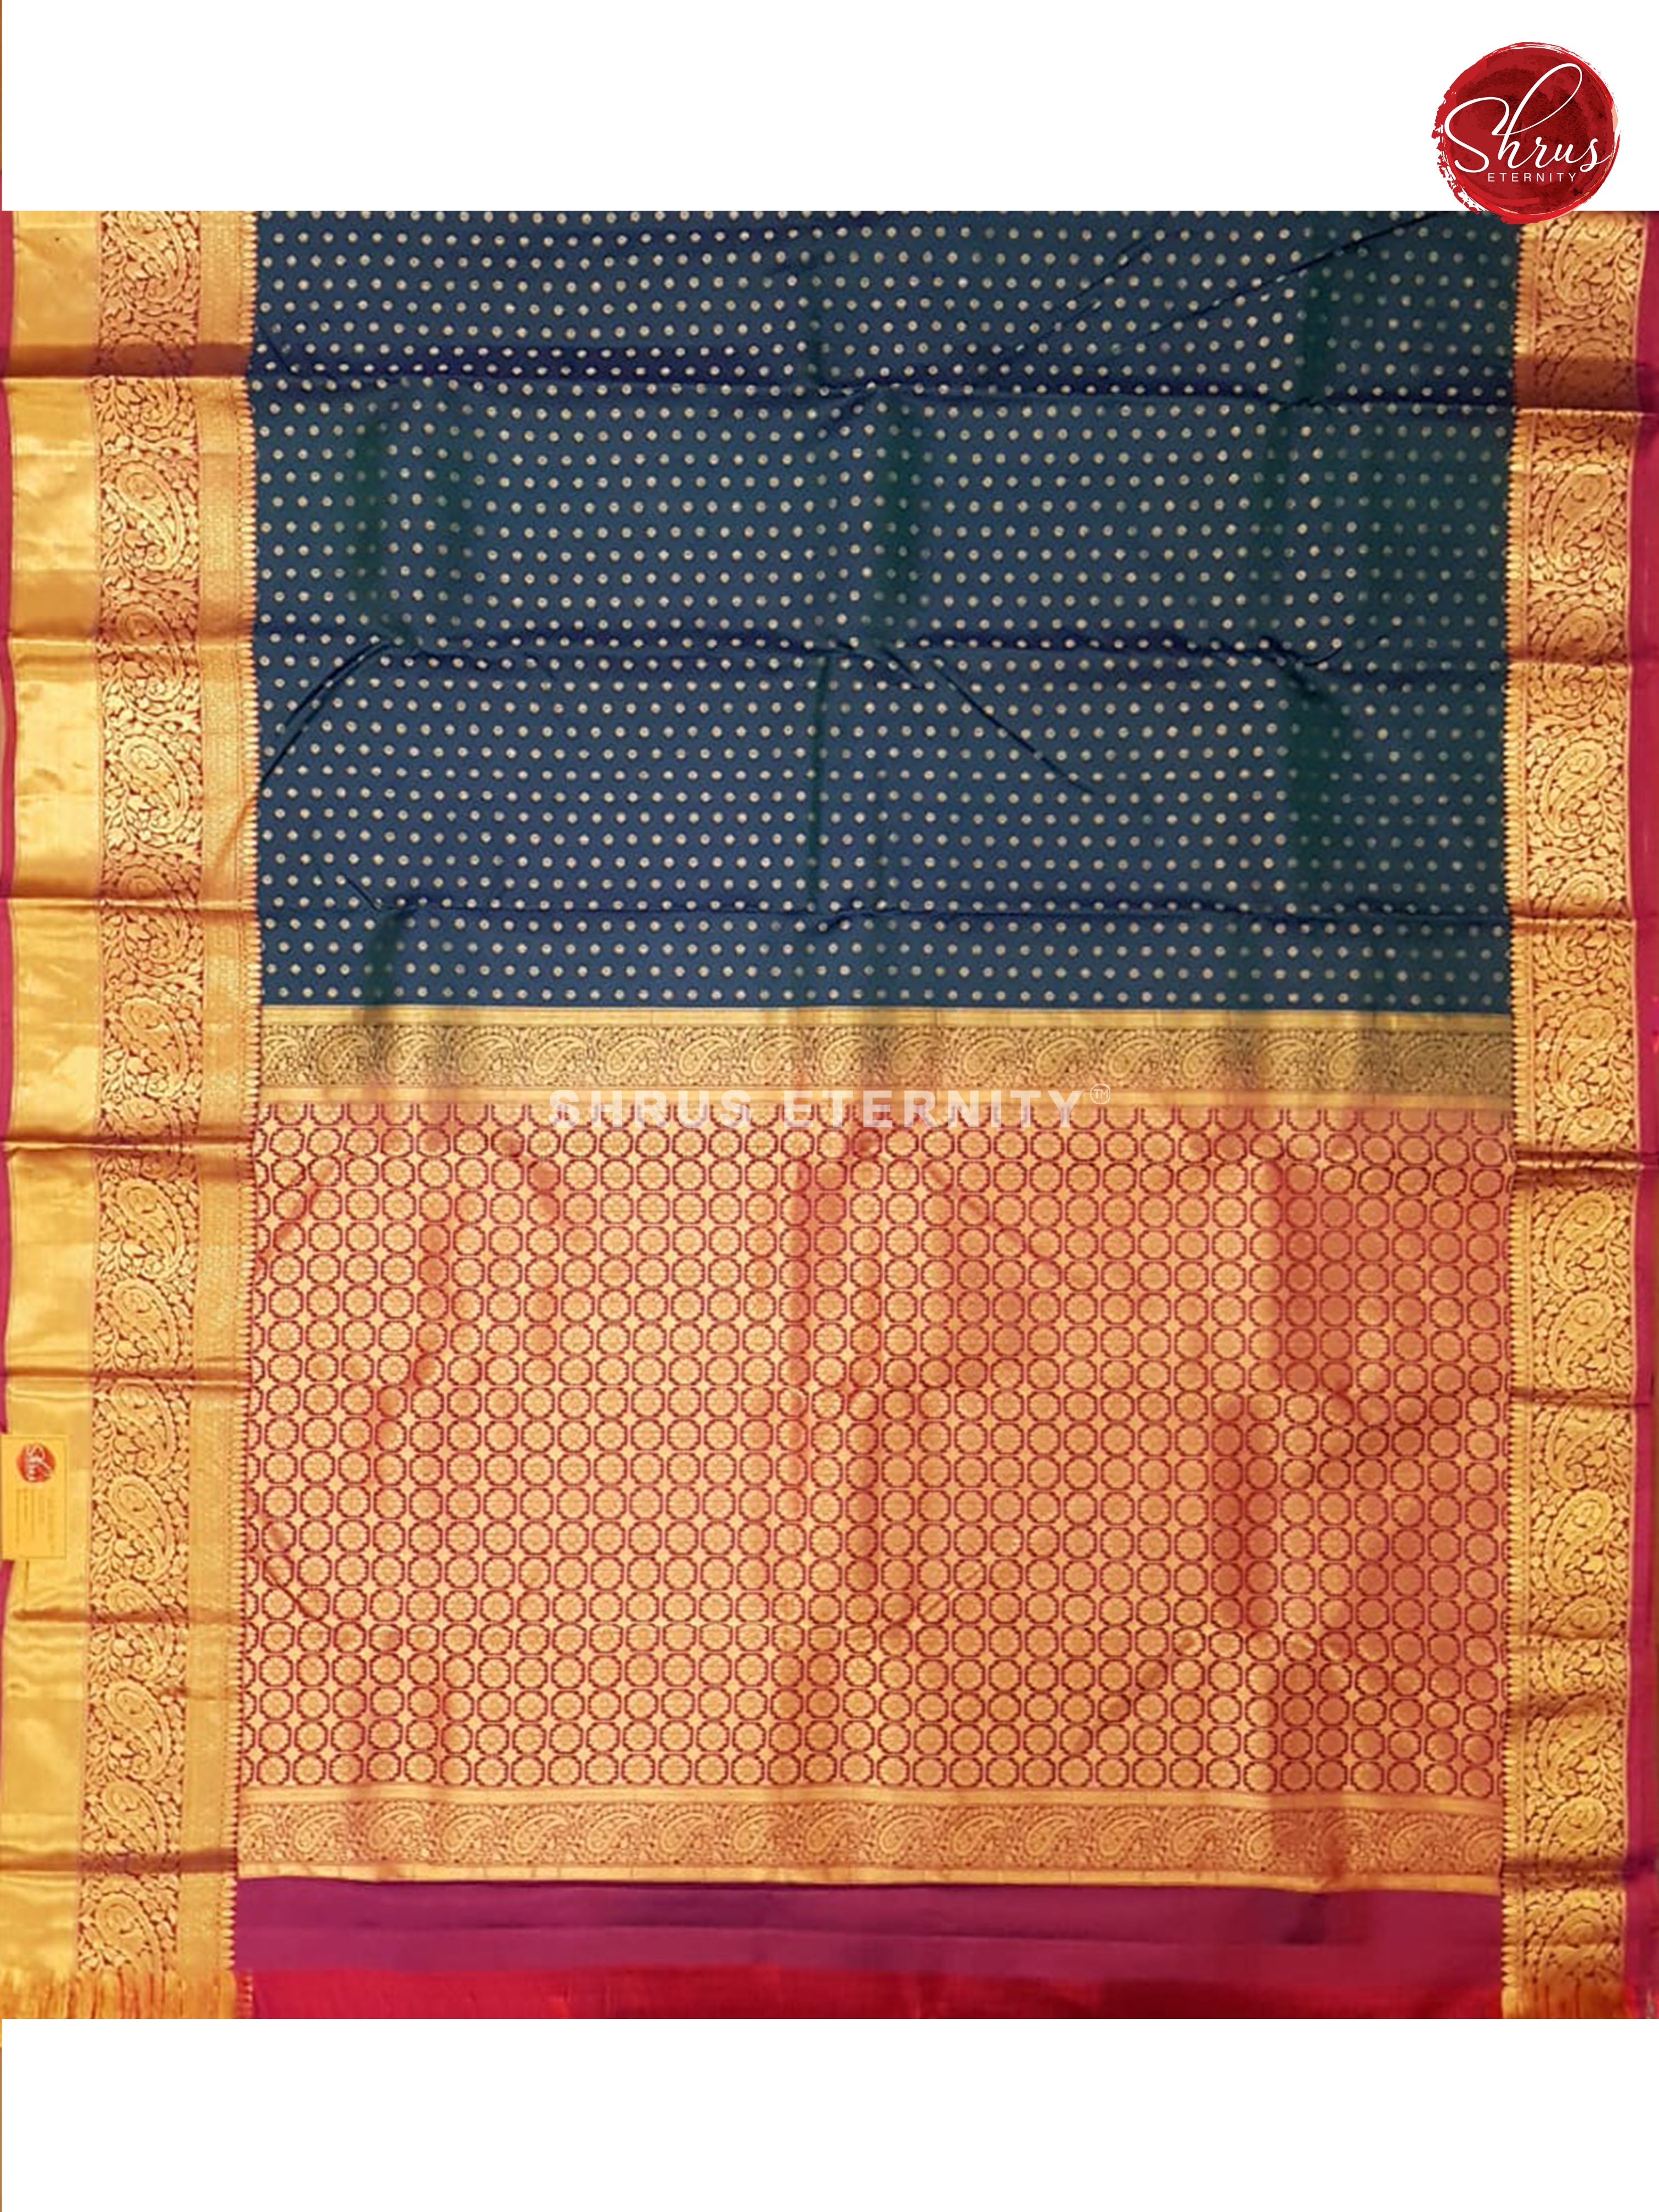 Peacock Blue & Purple - Kanchipuram Silk - Shop on ShrusEternity.com